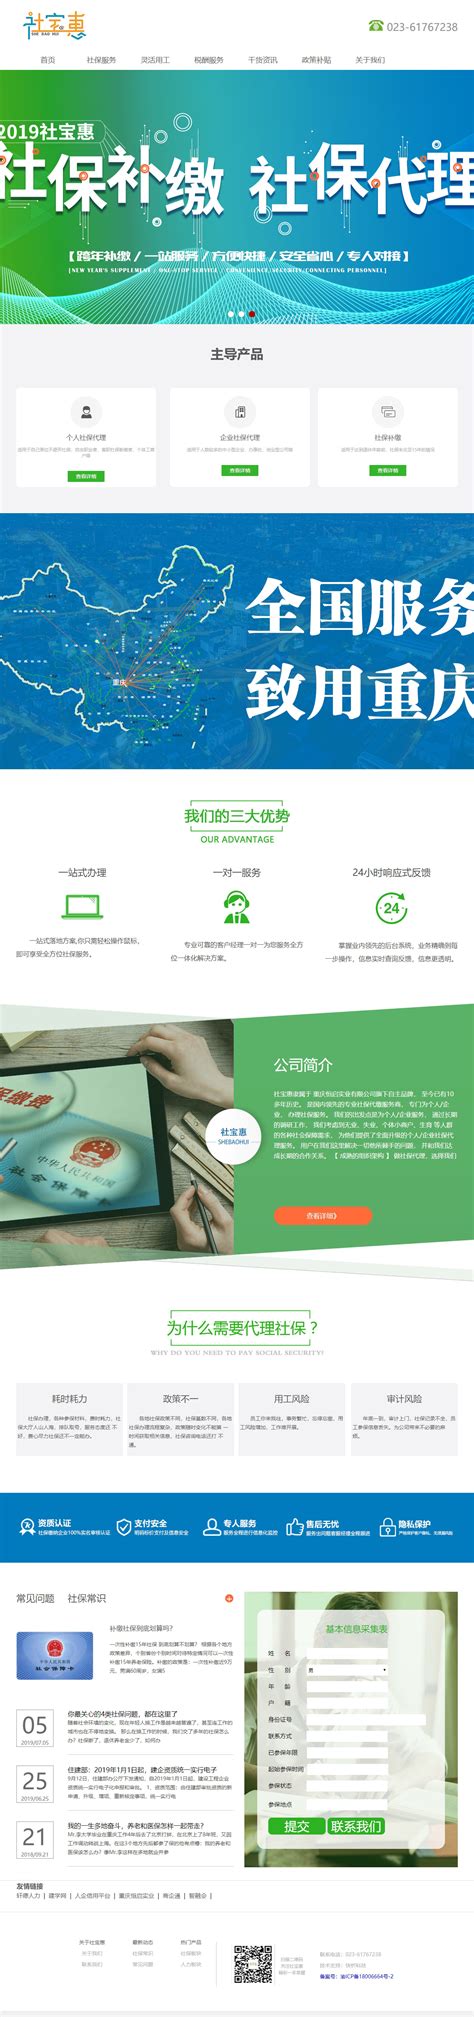 重庆网站建设、网络推广、重庆网站优化、百度SEO、重庆网络营销、整合推广、抖音SEO排名